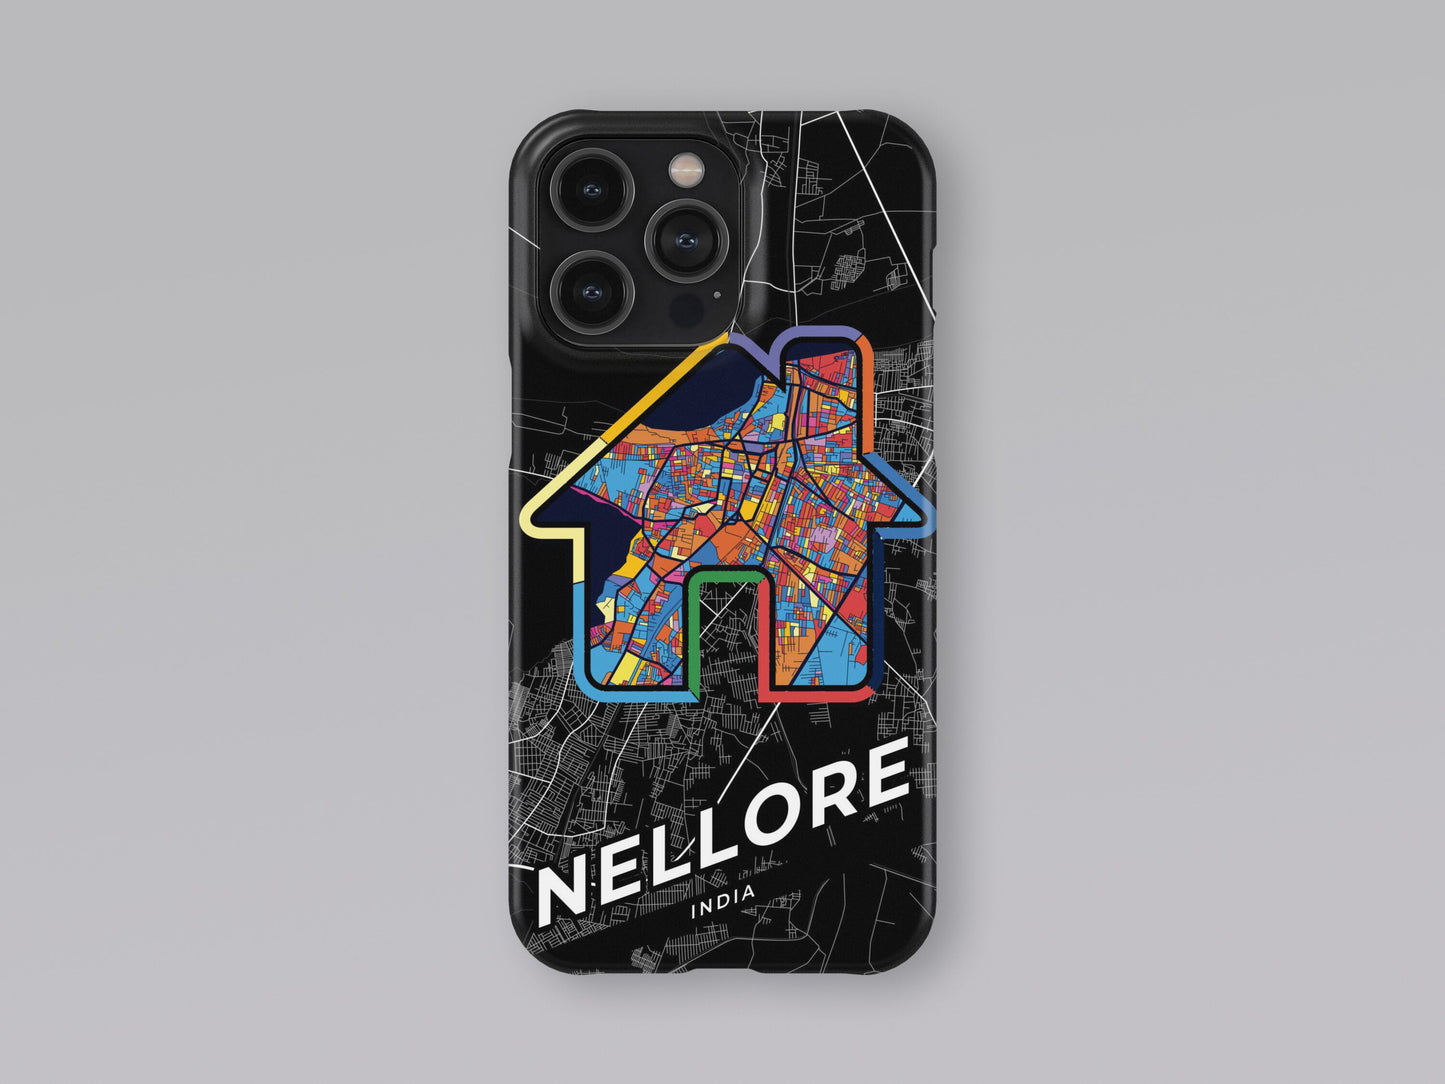 Nellore India slim phone case with colorful icon 3